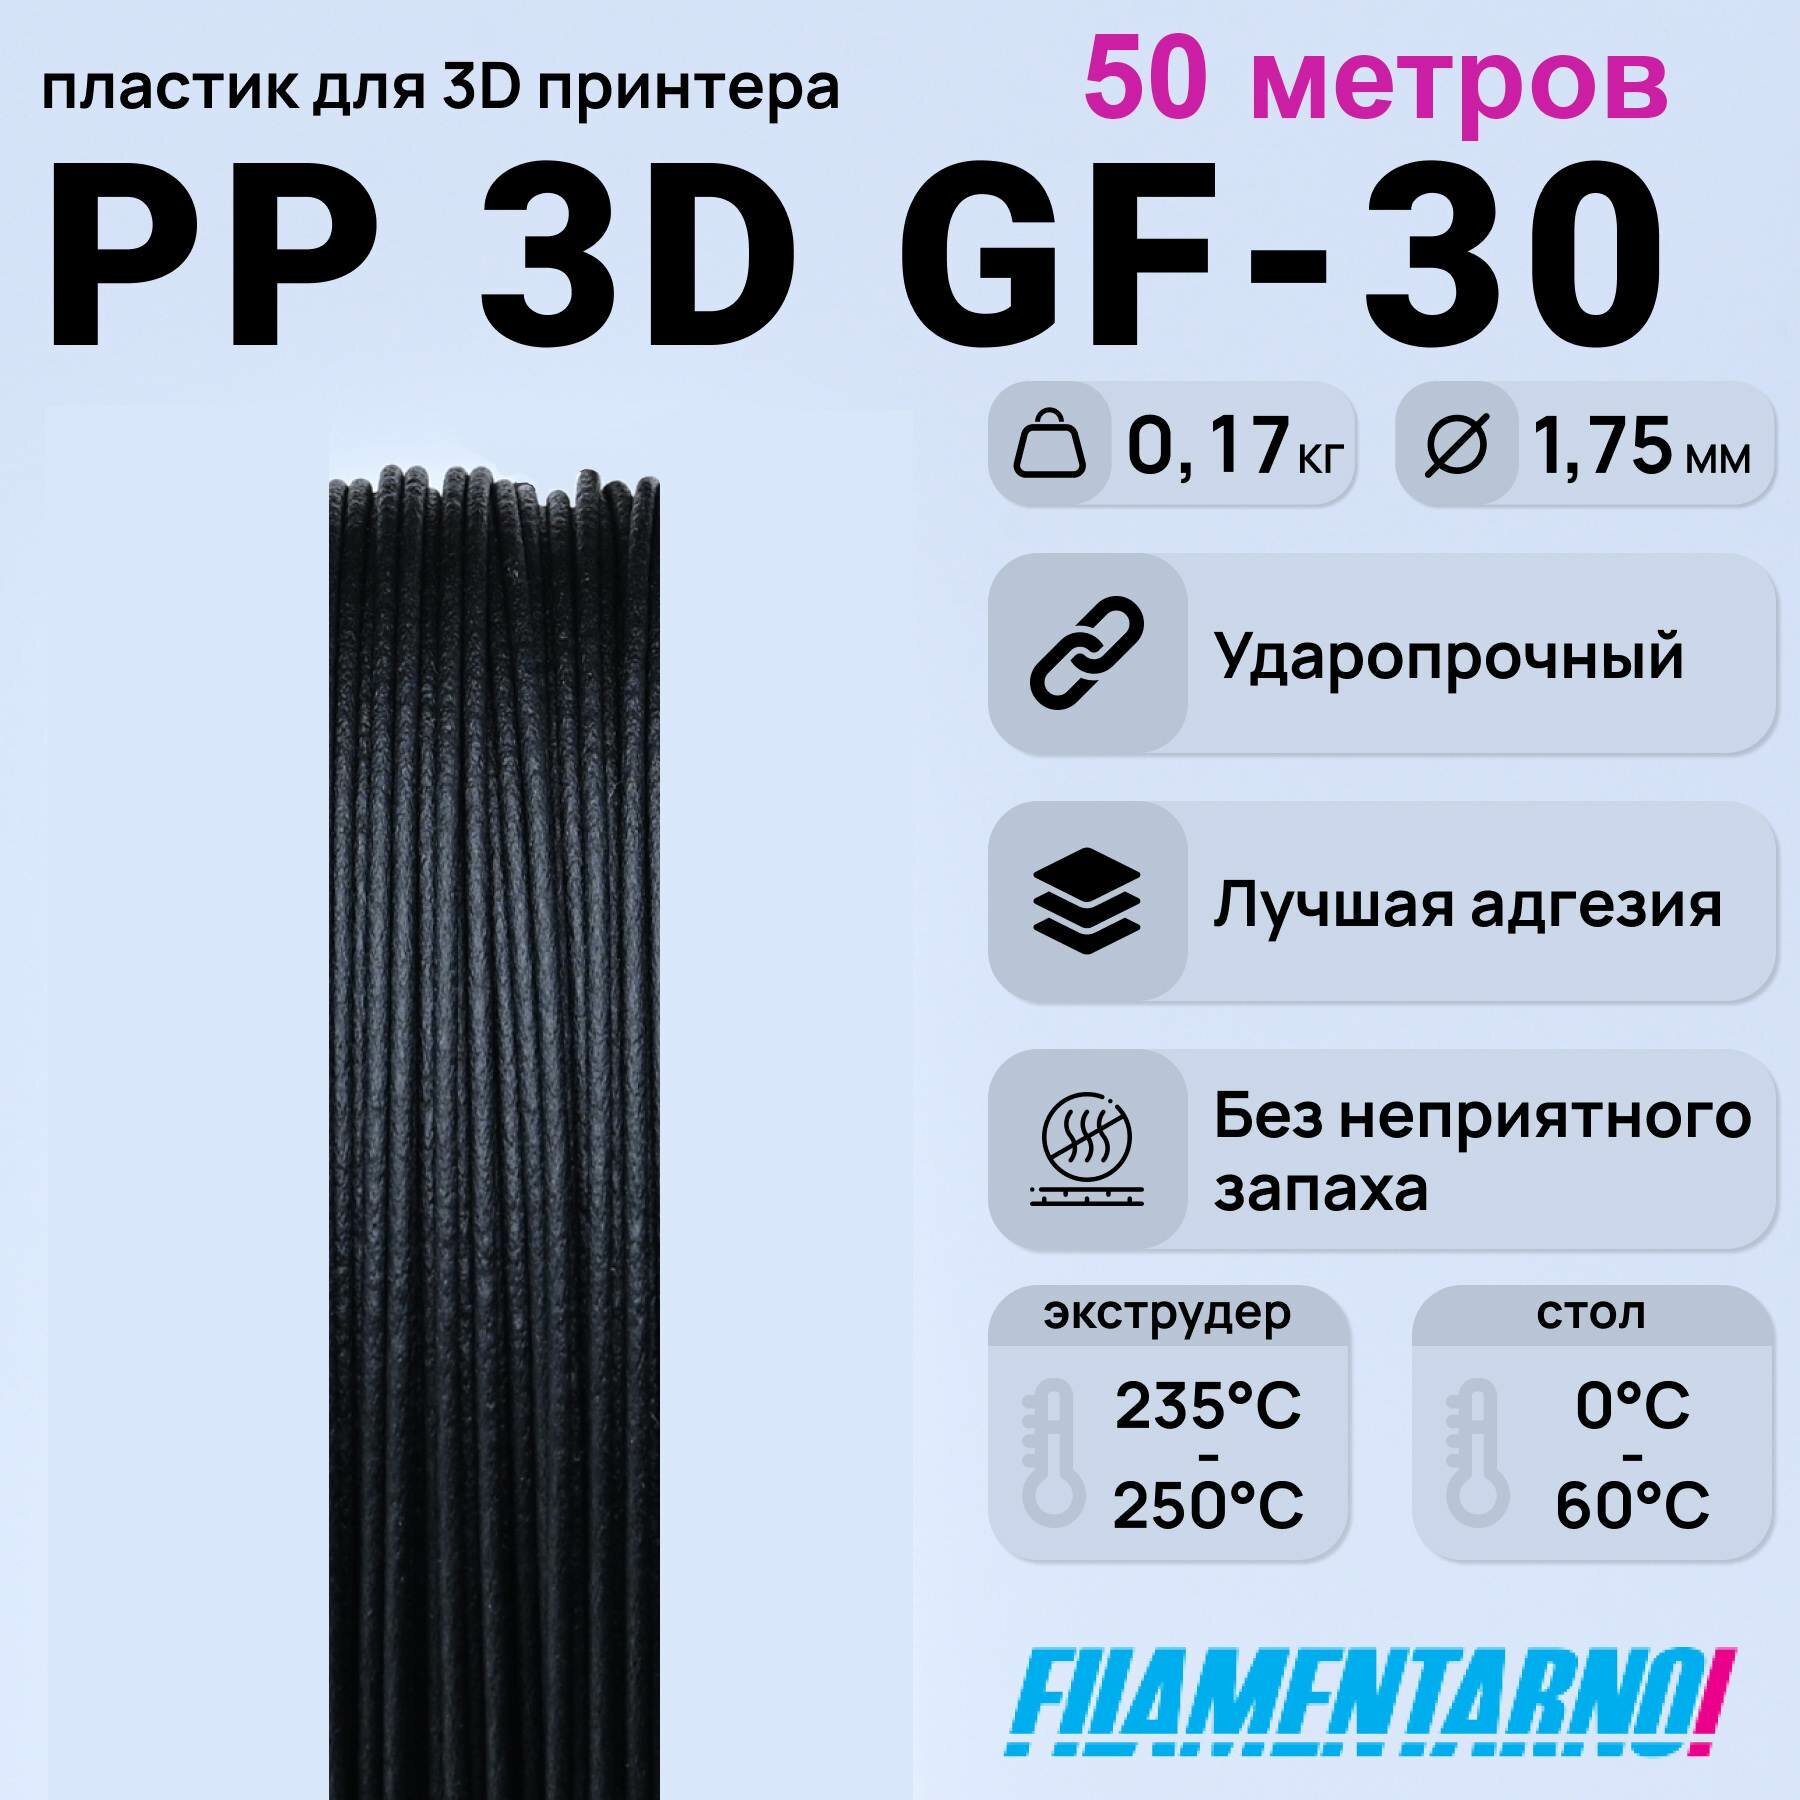 PP 3D Gf-30 черный моток 50 м, 1,75 мм, пластик Filamentarno для 3D-принтера